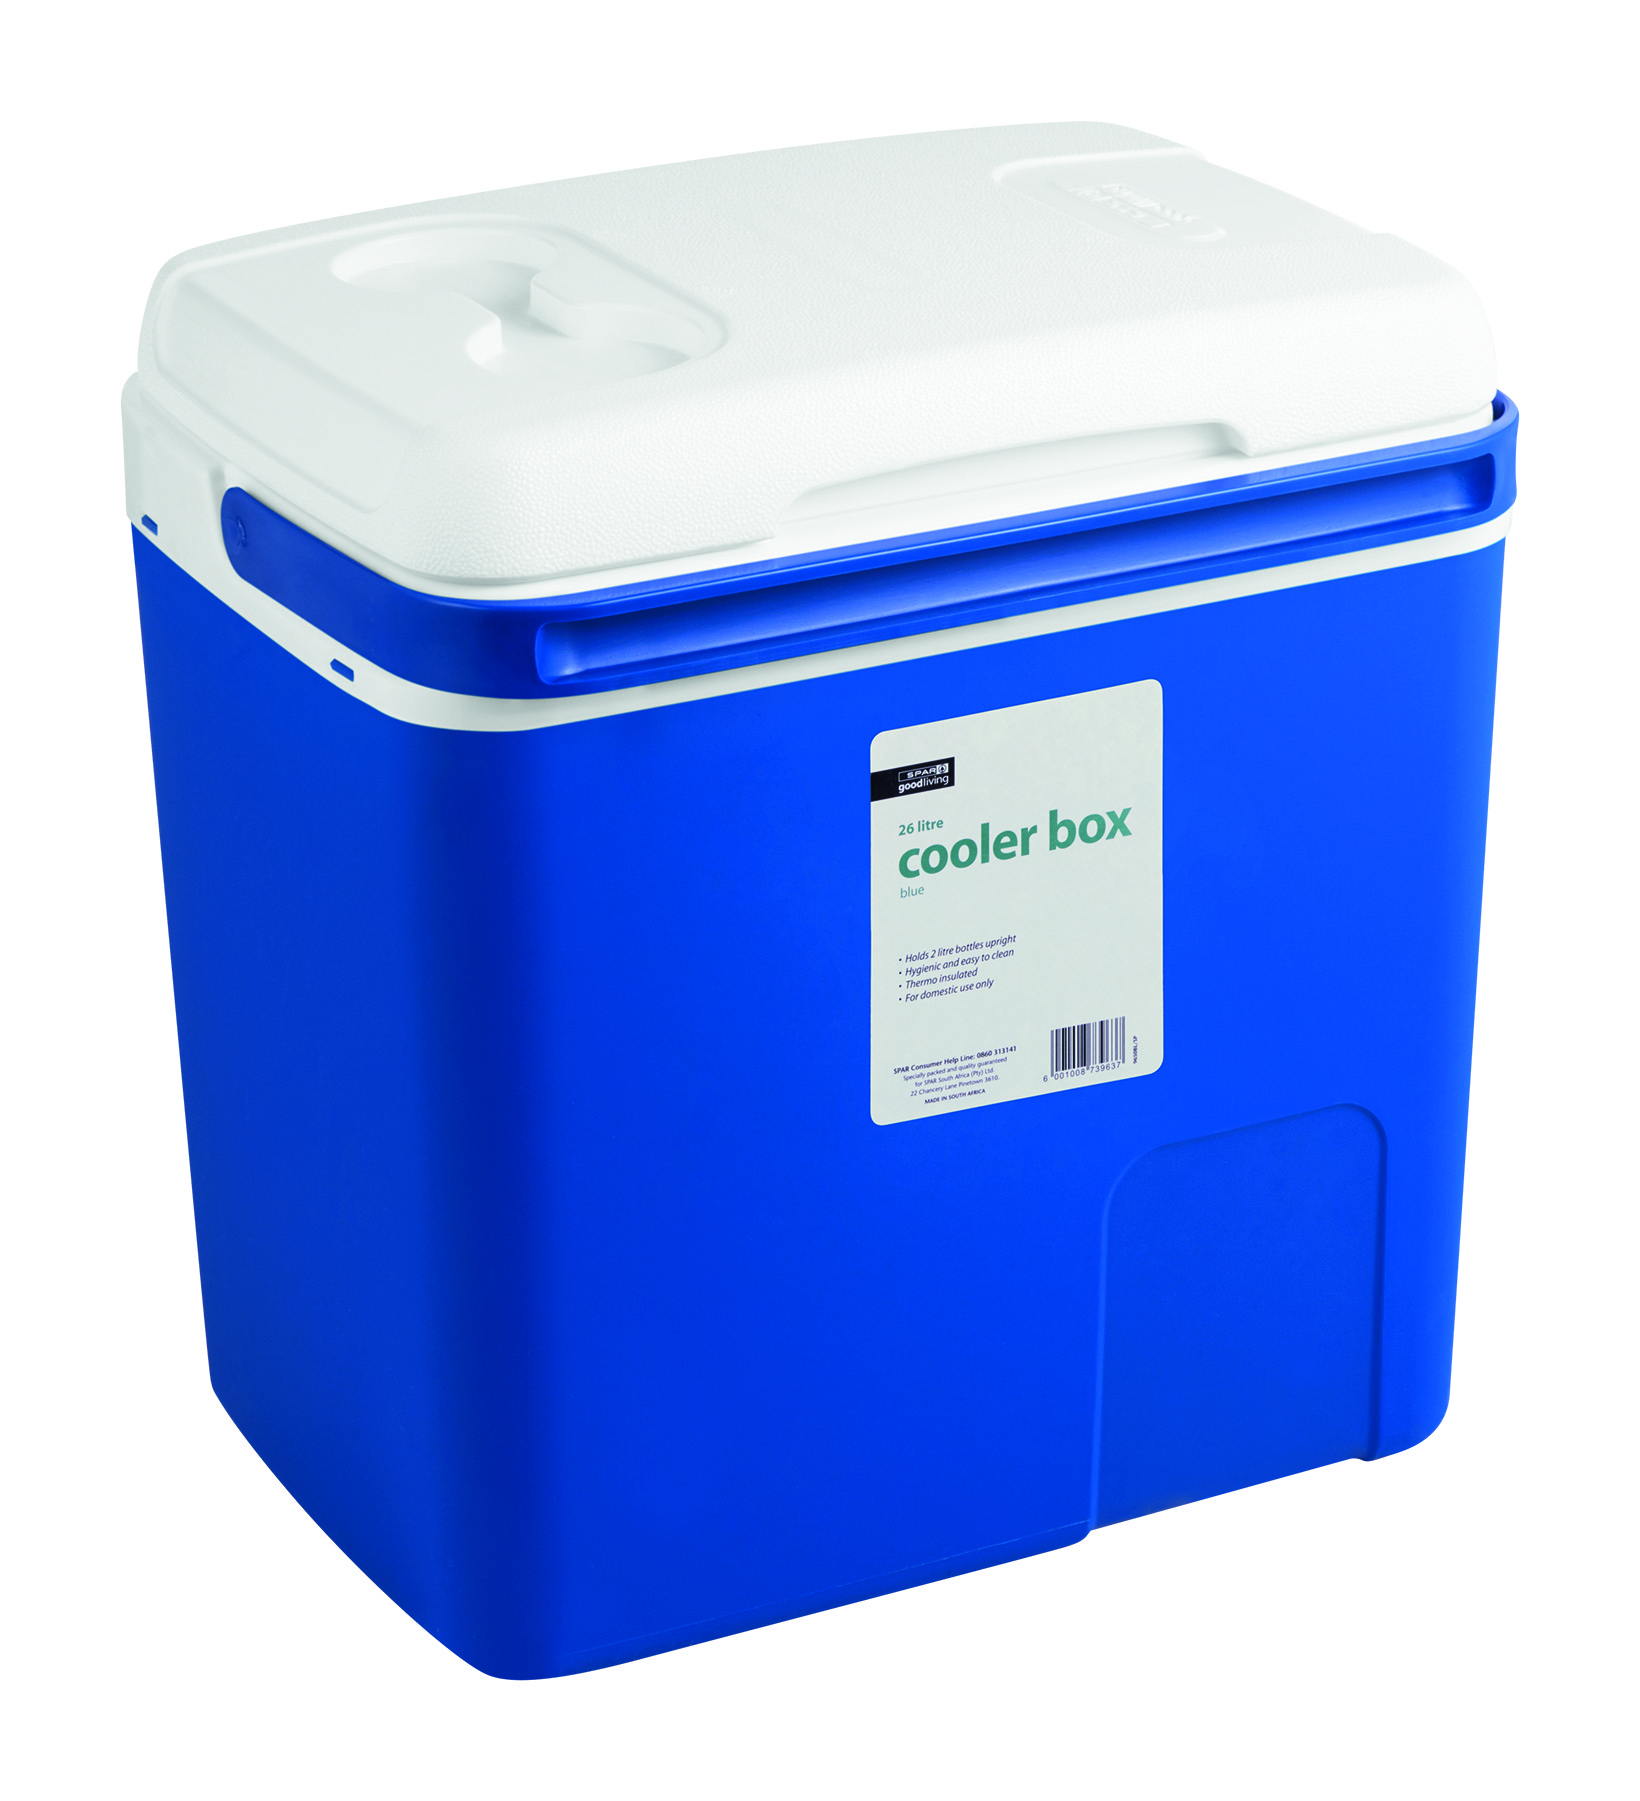 cooler box 26 litre (blue)